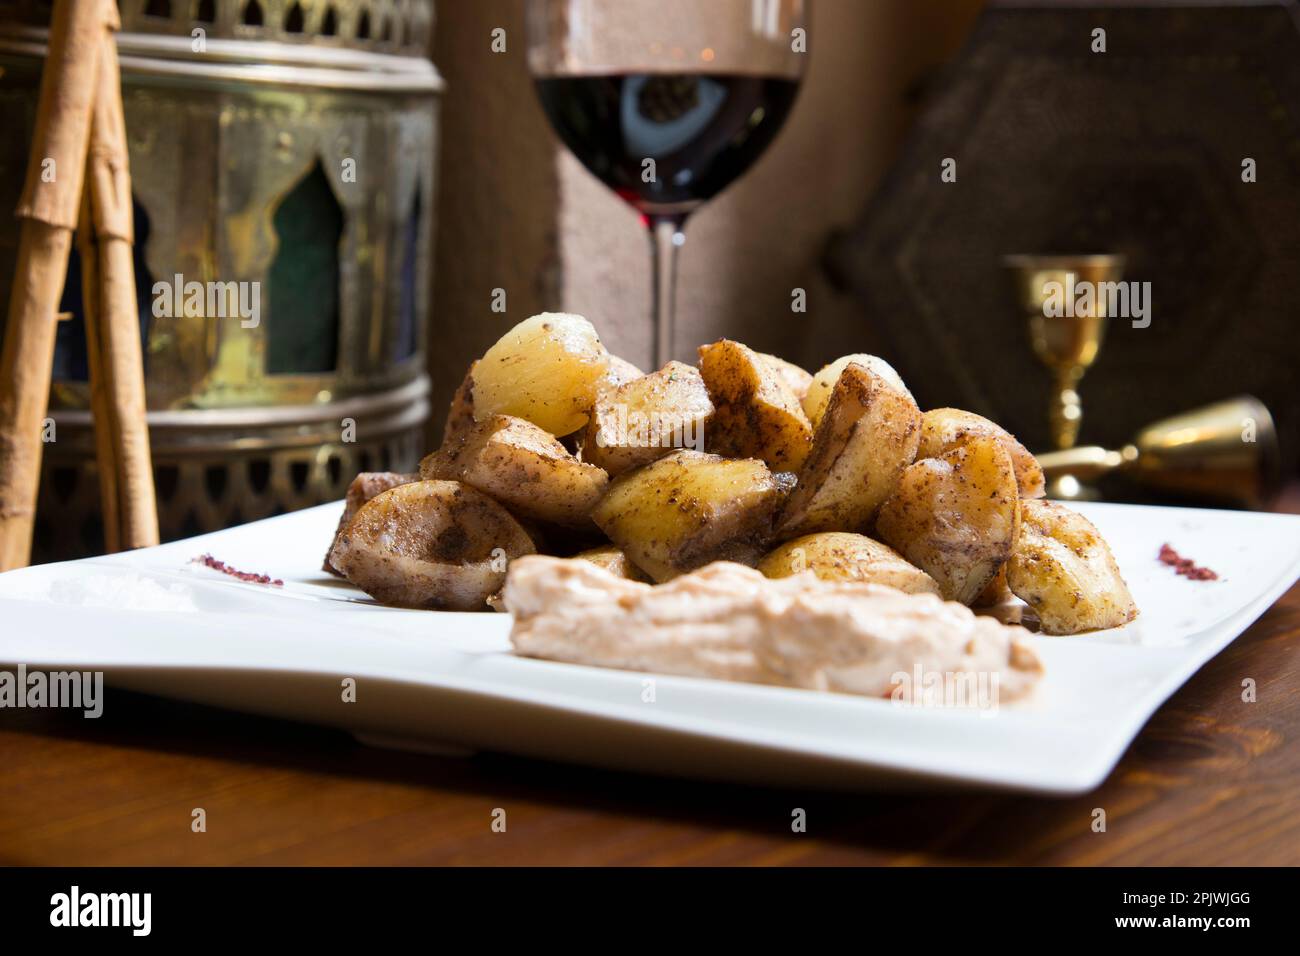 Papas bravas, sont une préparation typique de bars en Espagne, consistant en pommes de terre coupées en gros cubes, frits dans l'huile d'olive et assaisonnés avec de la salsa brava Banque D'Images